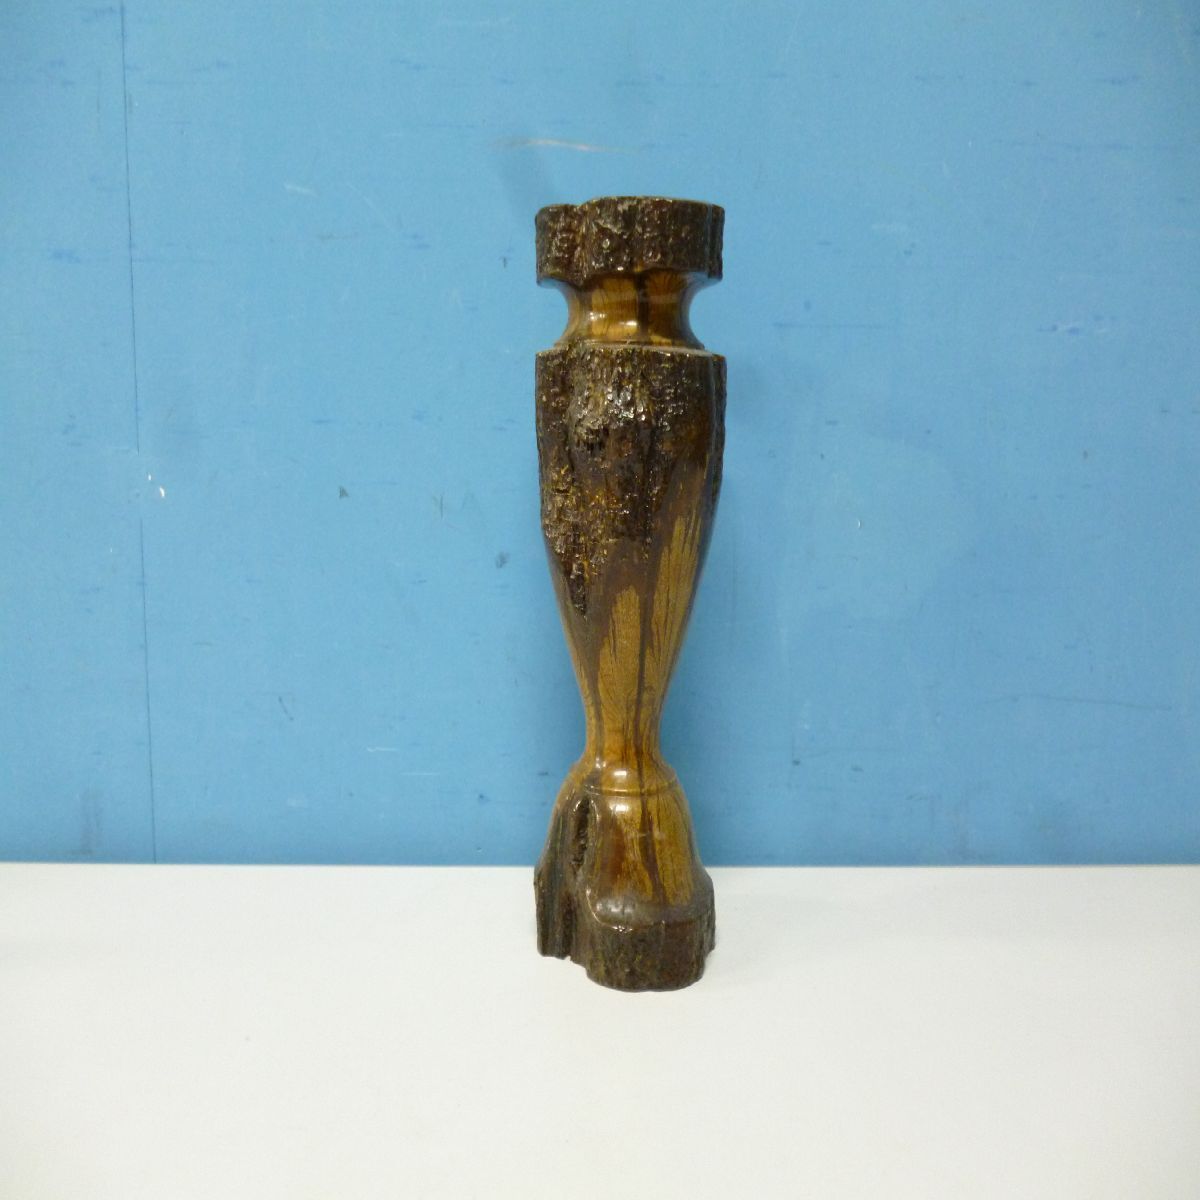 【骨董品】木製 花器 花台 花瓶 土台付属 天然木 工芸品 昭和レトロ フラワーベース 木彫り